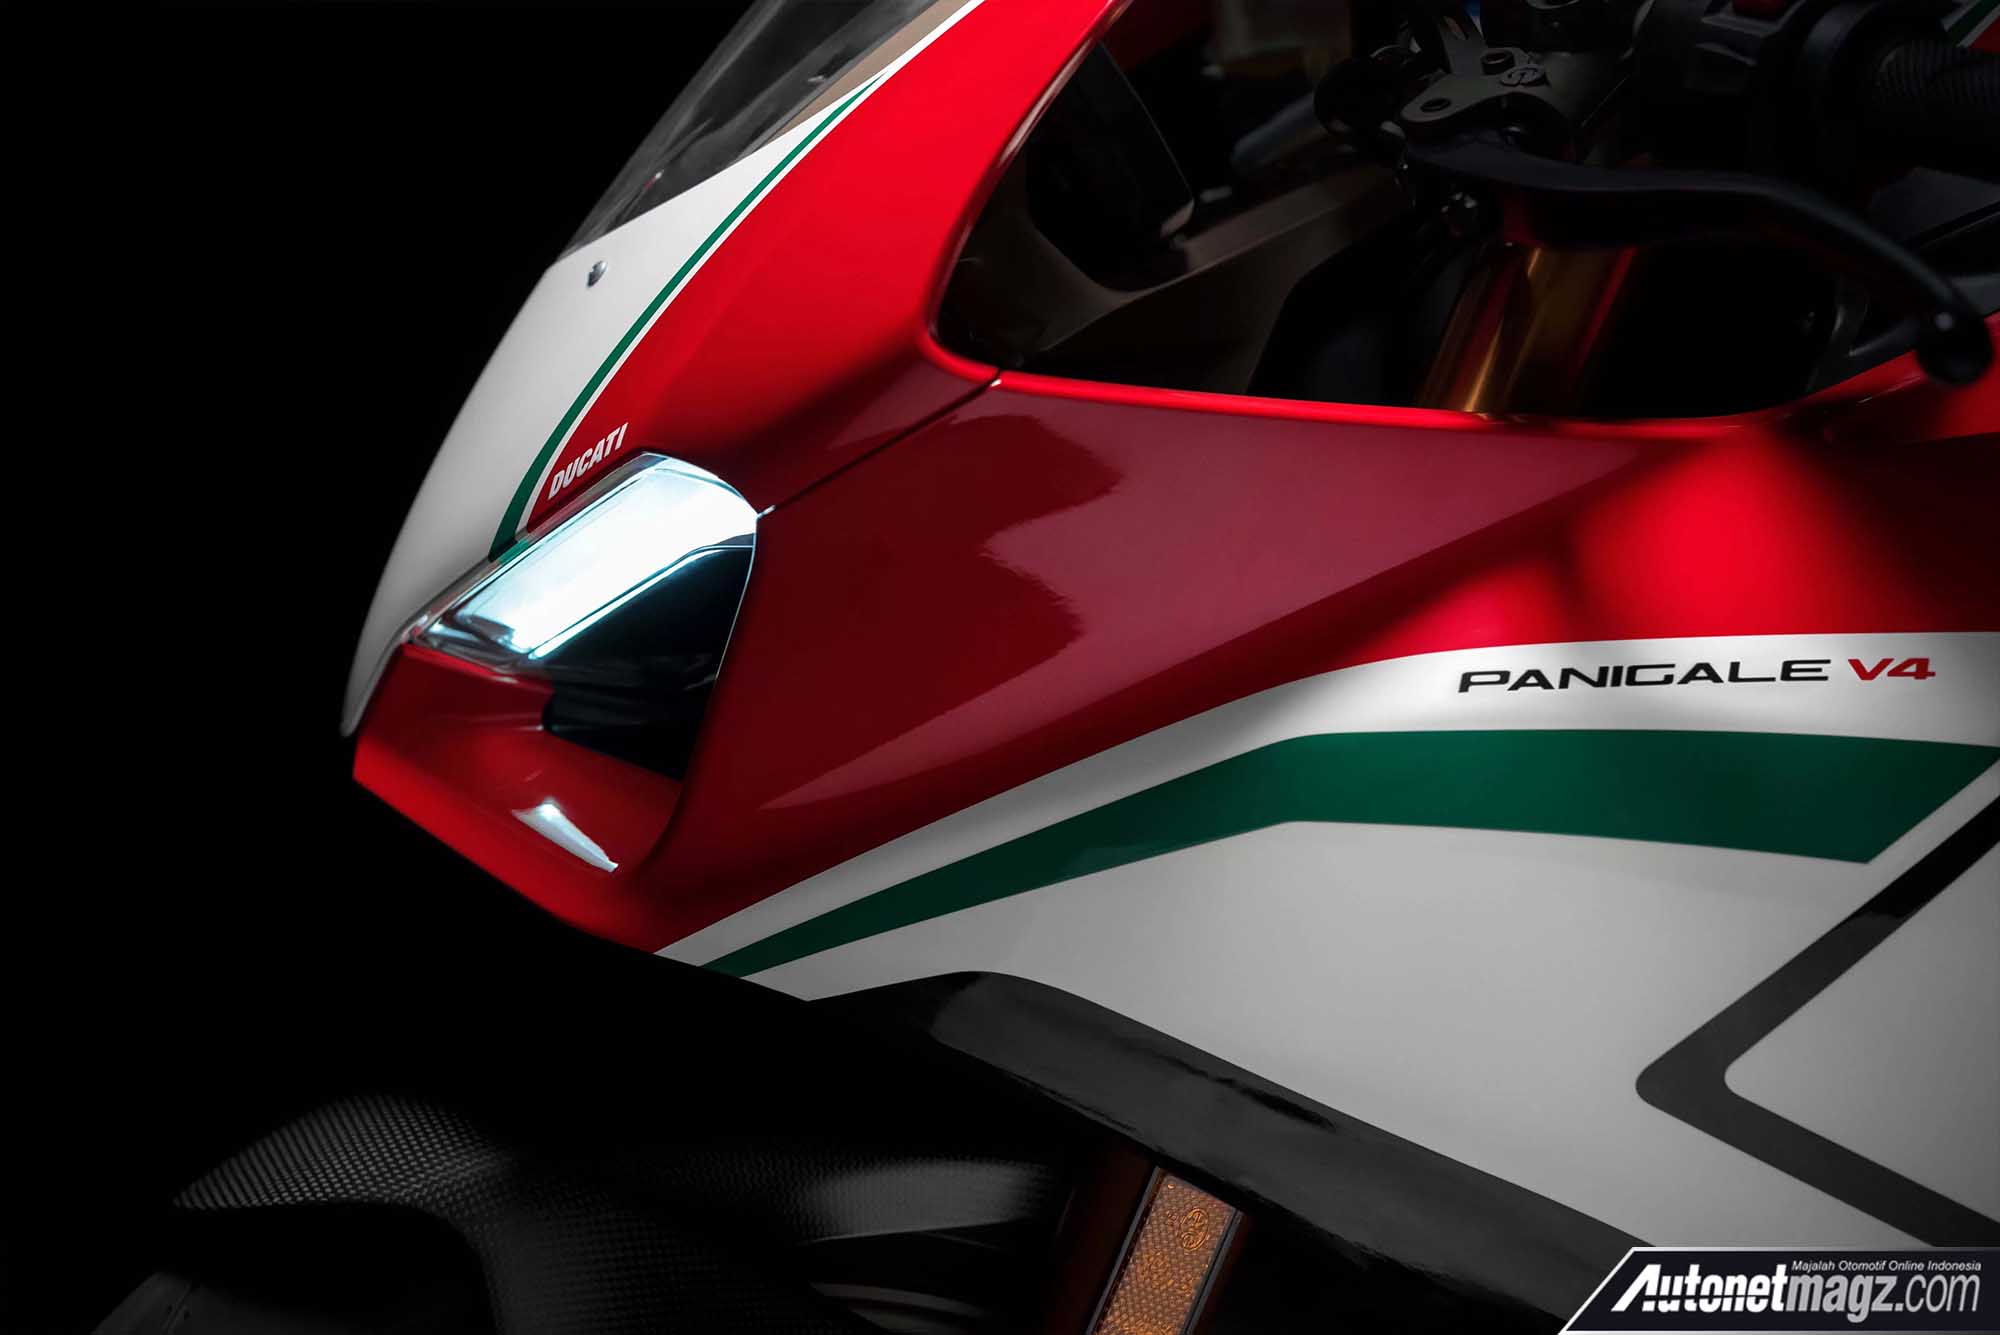 Berita, moncong depan Ducati Panigale V4 Speciale: EICMA 2017 : Ducati Panigale V4 Speciale, Lebih Kencang & Ringan